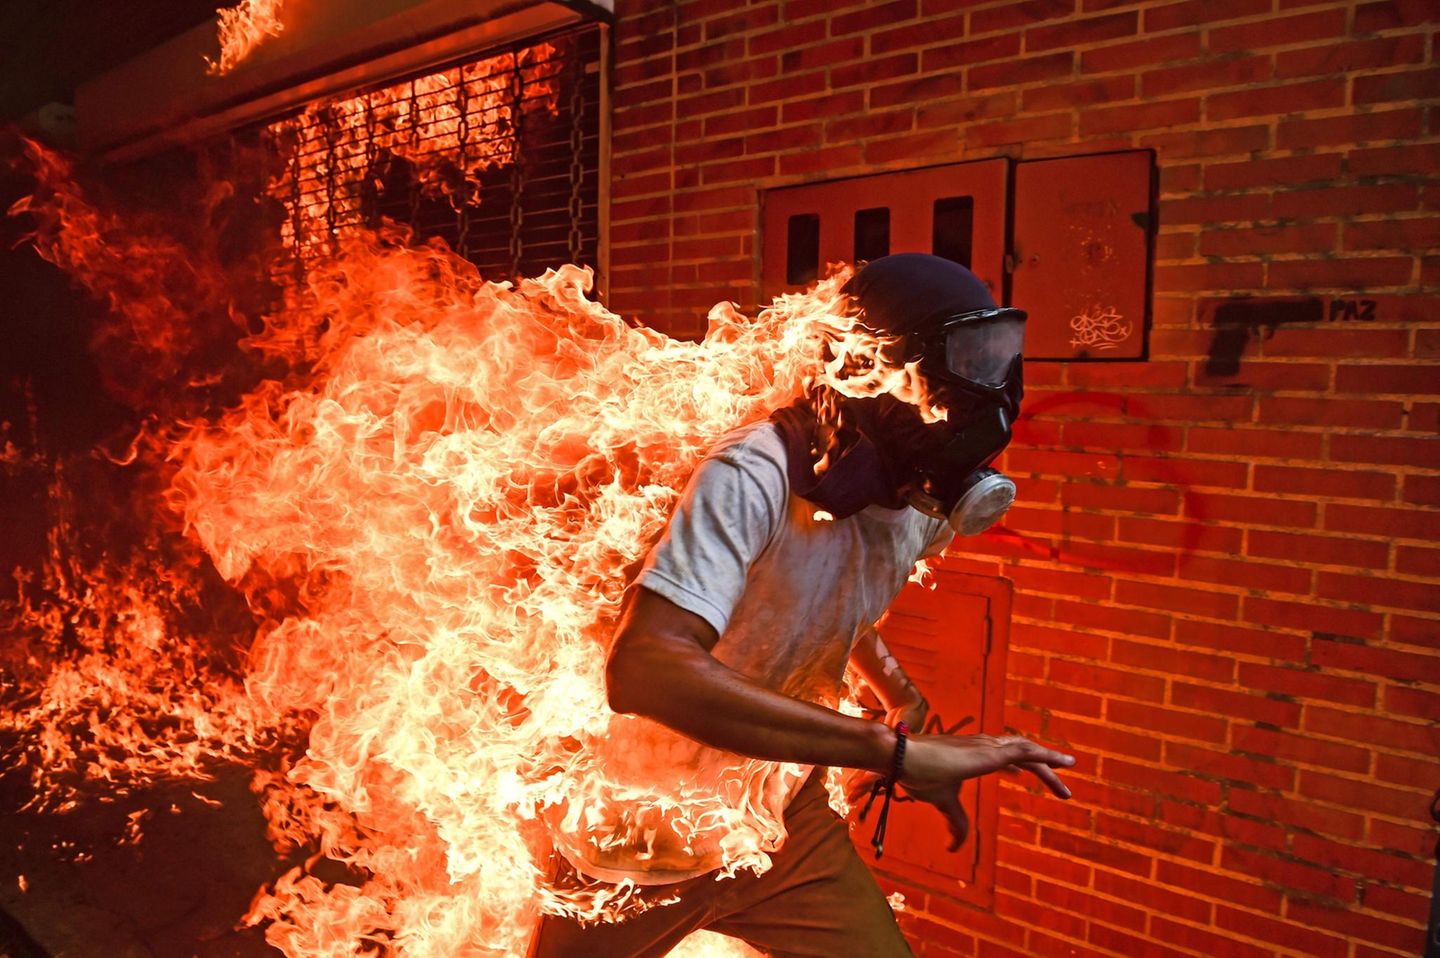 "Venezuela Krise" lautet der schlichte Titel des spektakulären Fotos, mit dem der Fotograf Ronaldo Schemidt jetzt den Titel für das Weltpressefoto des Jahres gewann. Das Bild zeigt den Demonstranten José Víctor Salazar Balza, der während der Proteste gegen Venezuelas Präsident Nicolás Maduro im Mai 2017 von Flammen erfasst worden war. Er überlebte mit schweren Brandwunden